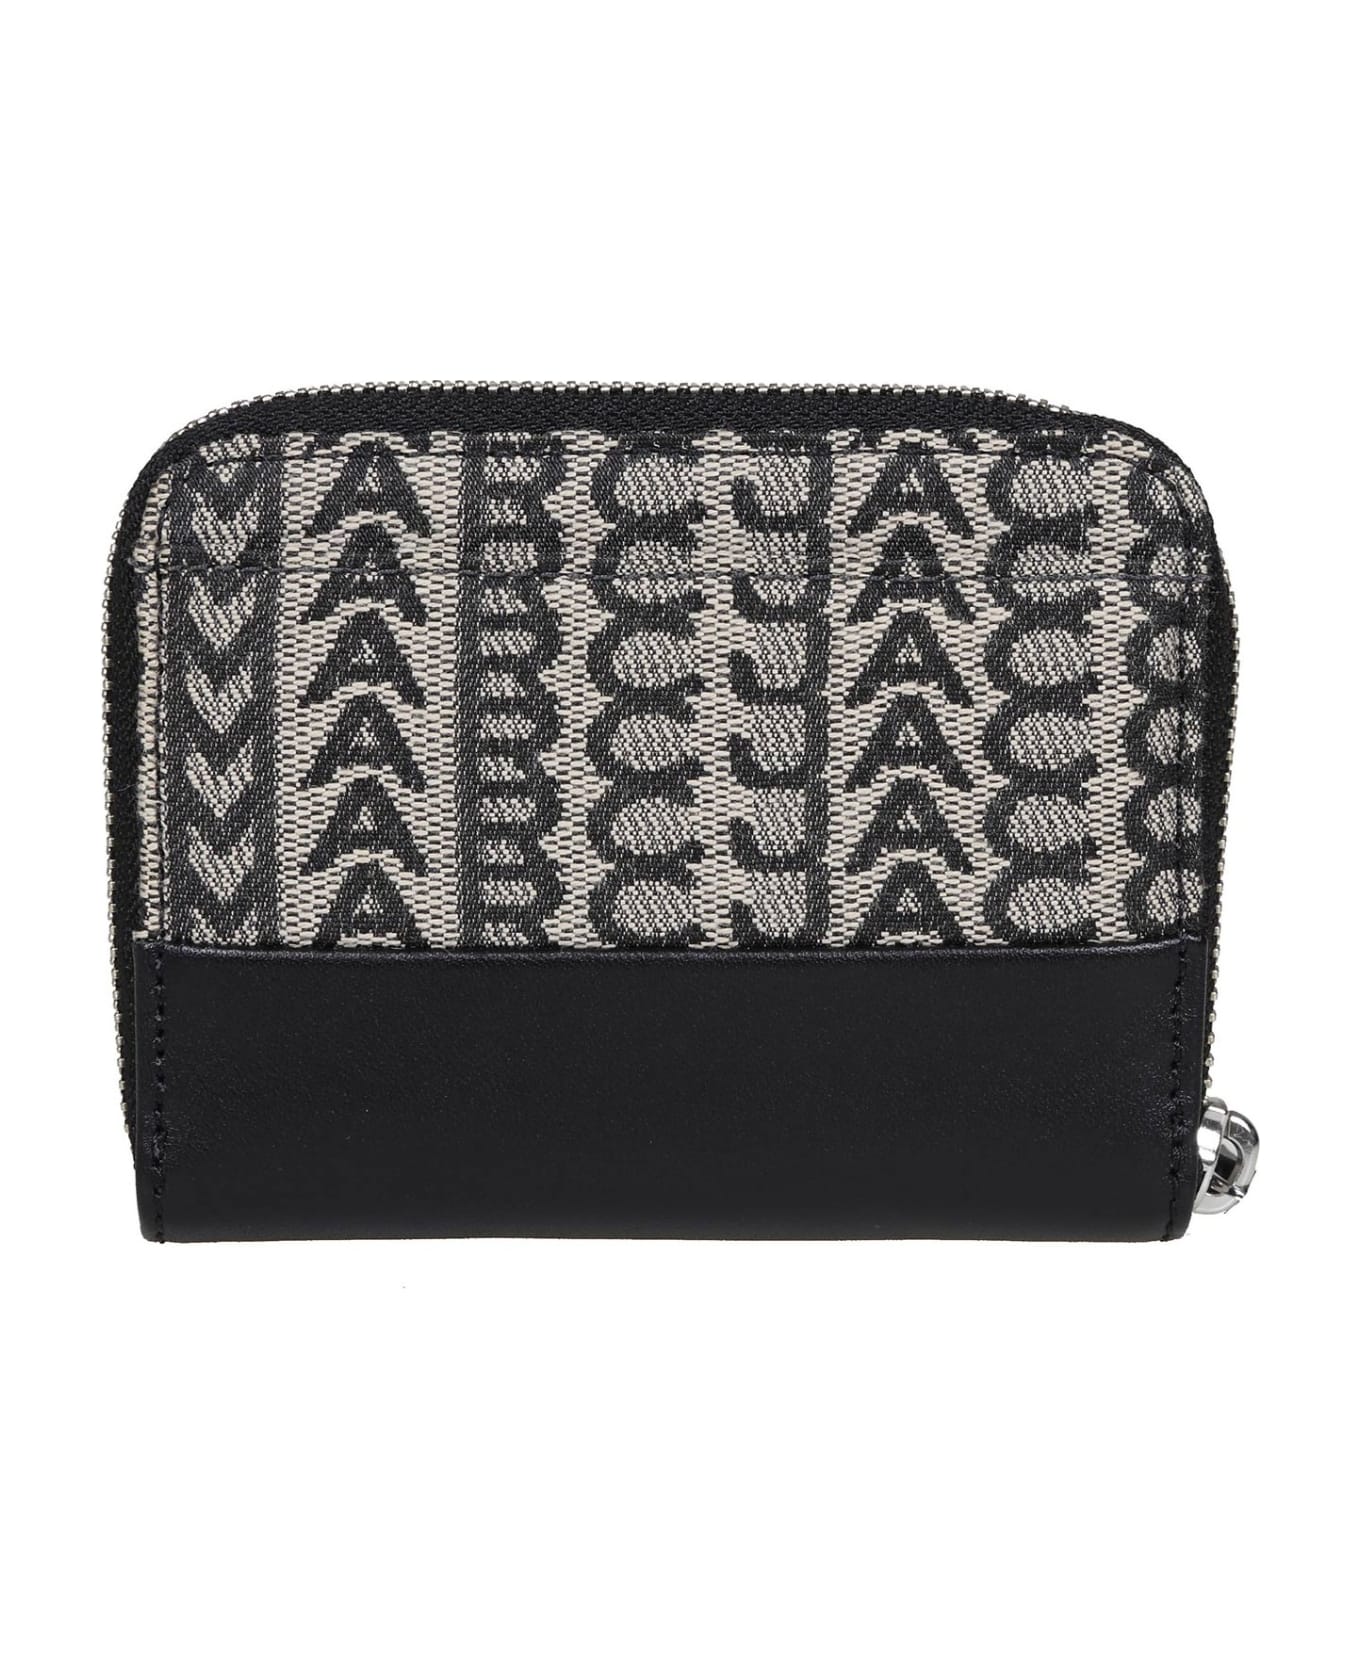 Marc Jacobs The Monogram Zip Around Beige Black Wallet - BEIGE 財布